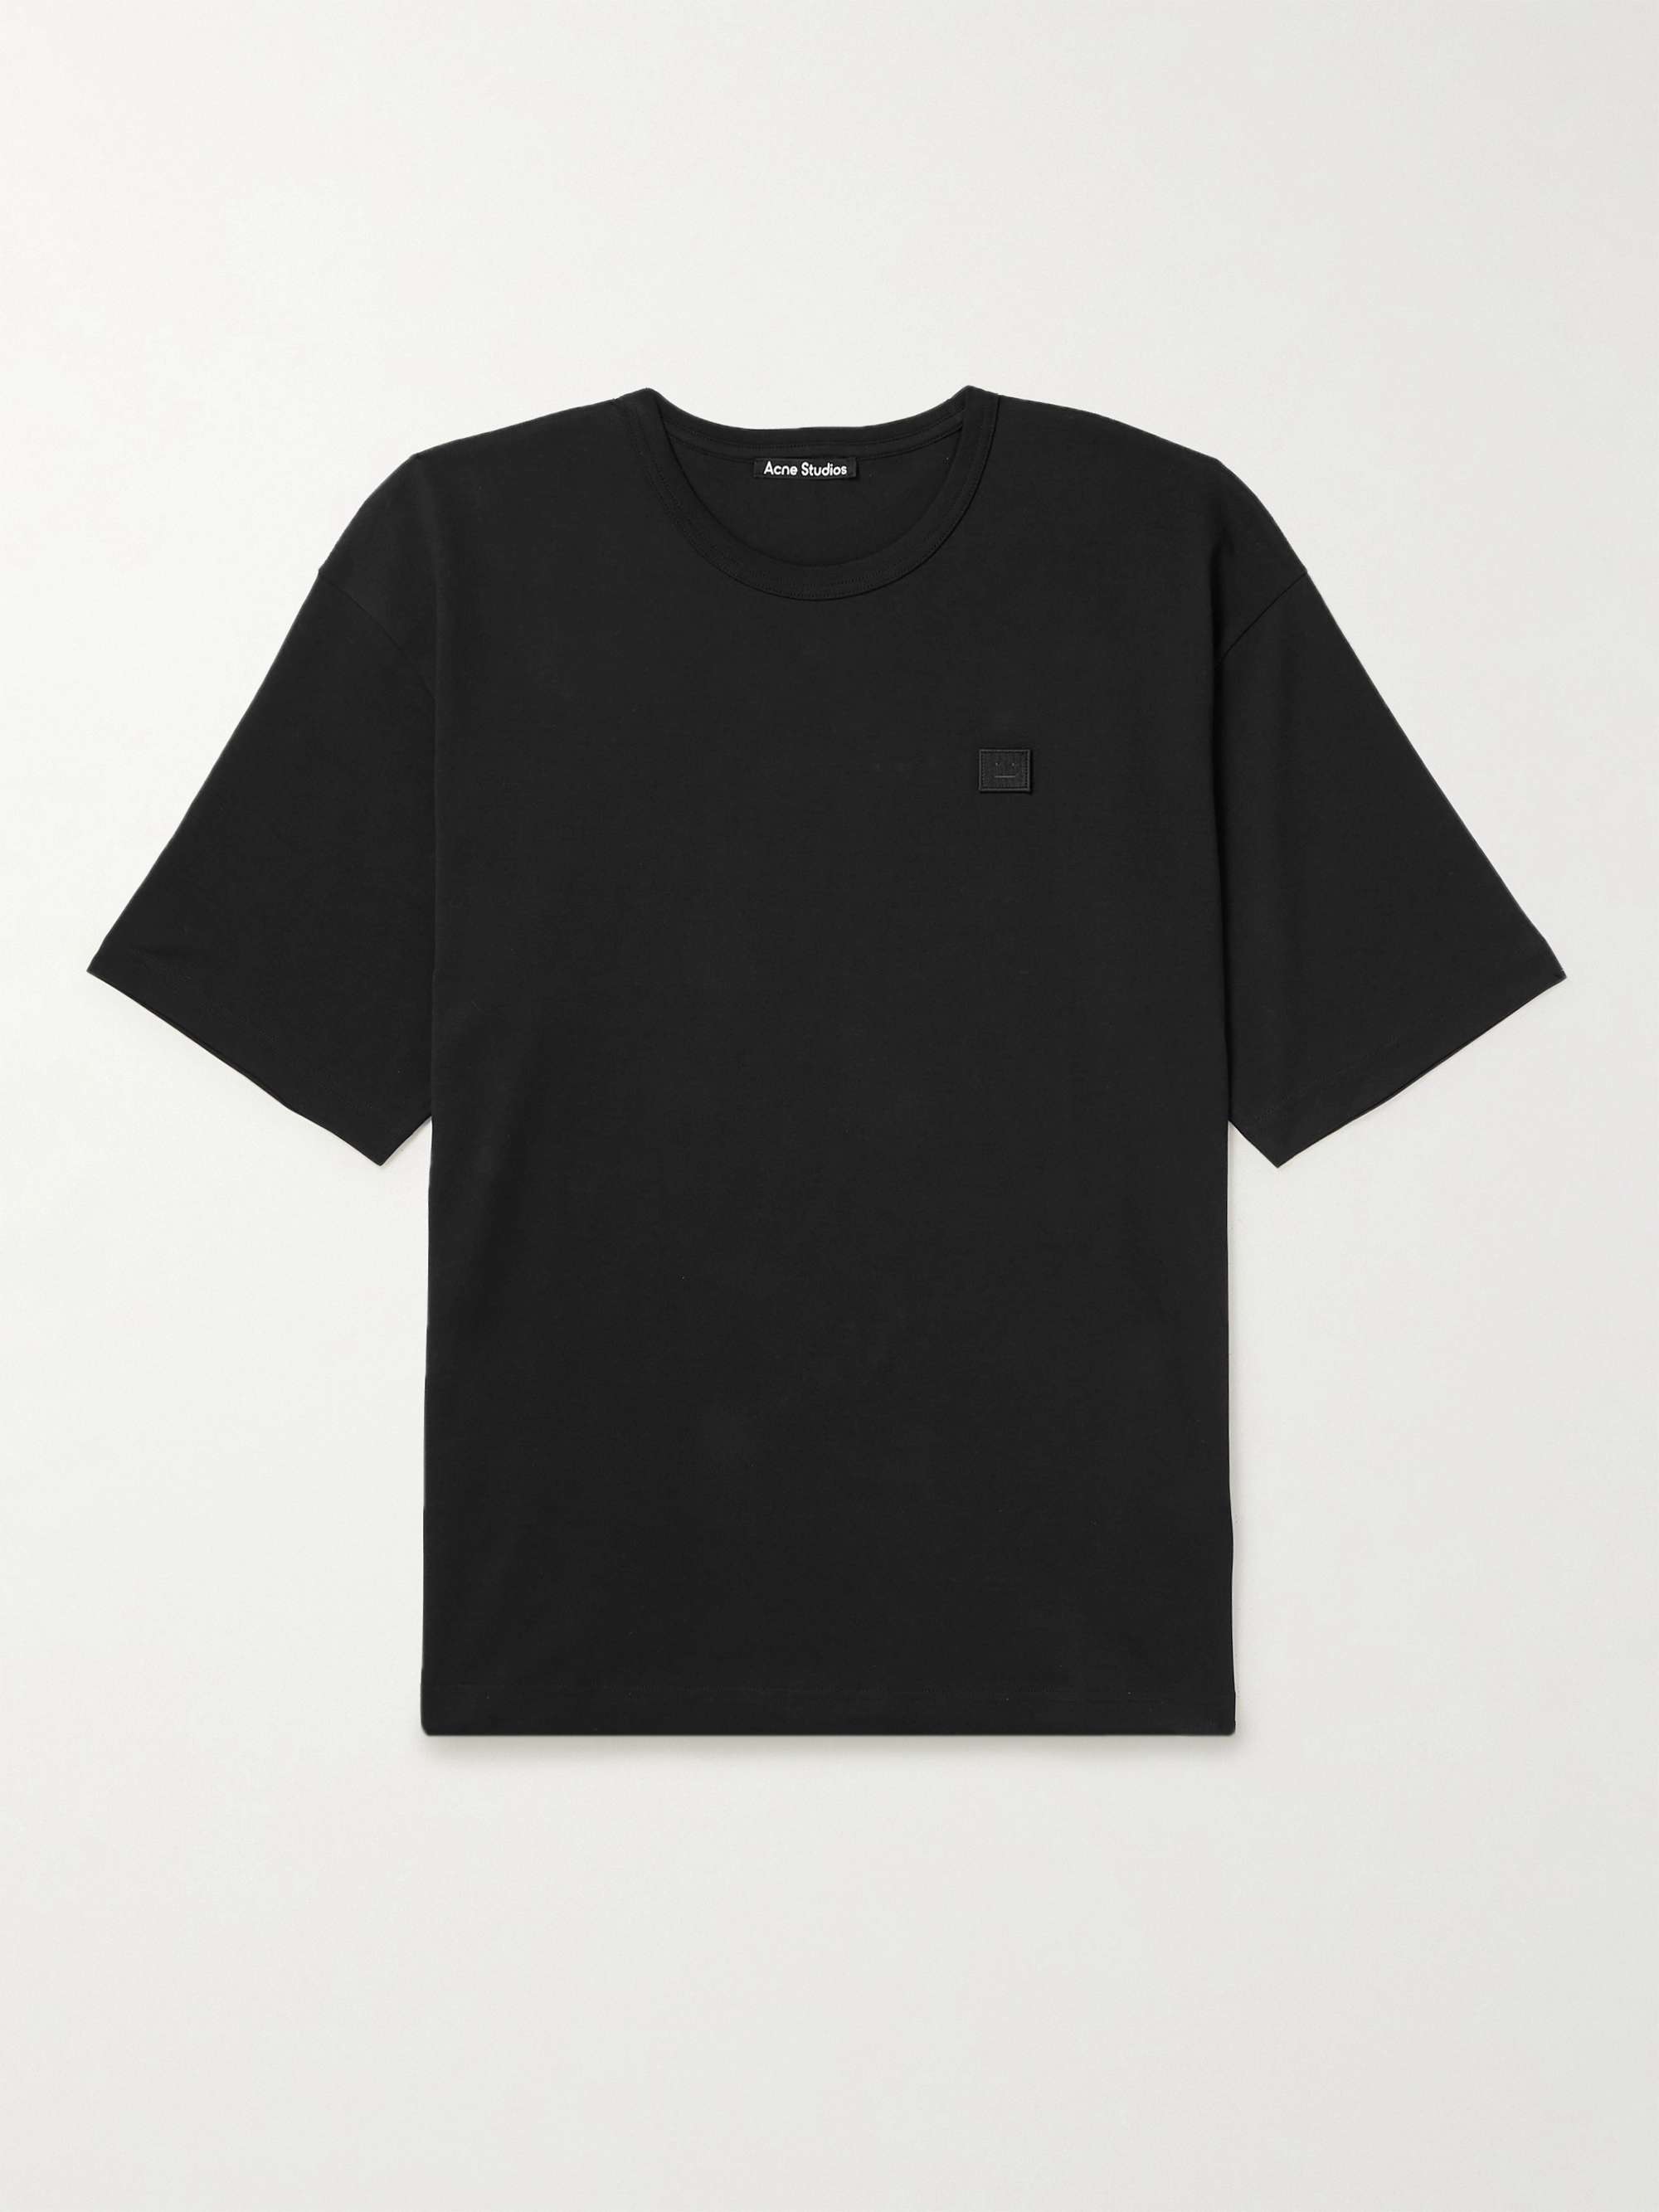 ACNE STUDIOS Exford Logo-Appliquéd Cotton-Jersey T-Shirt for Men | MR ...